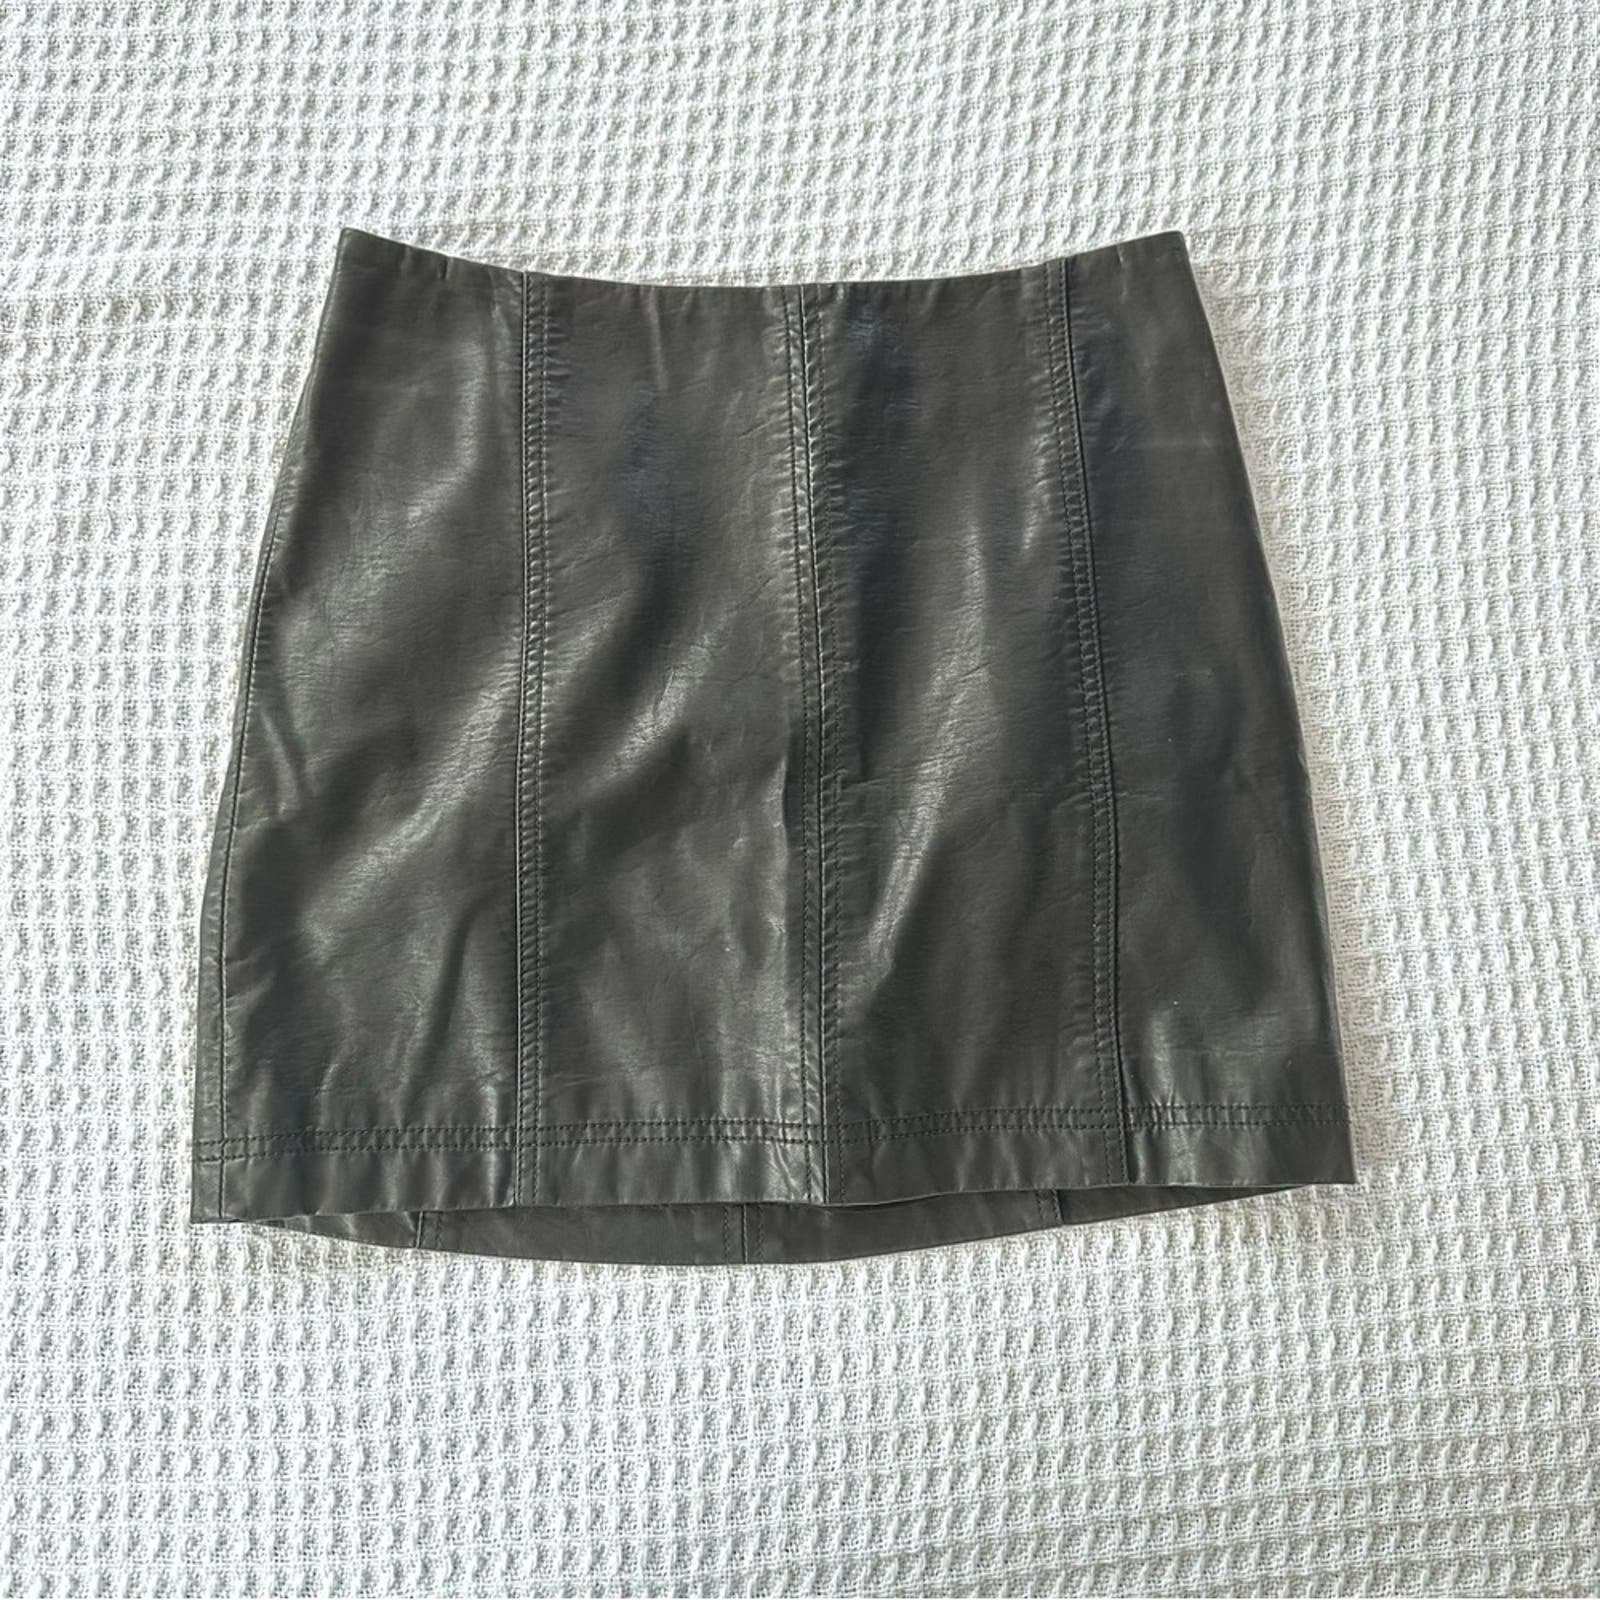 Promotions  Free People Women´s Faux Leather Skirt Black Size 8 JjP2cmTZN Great